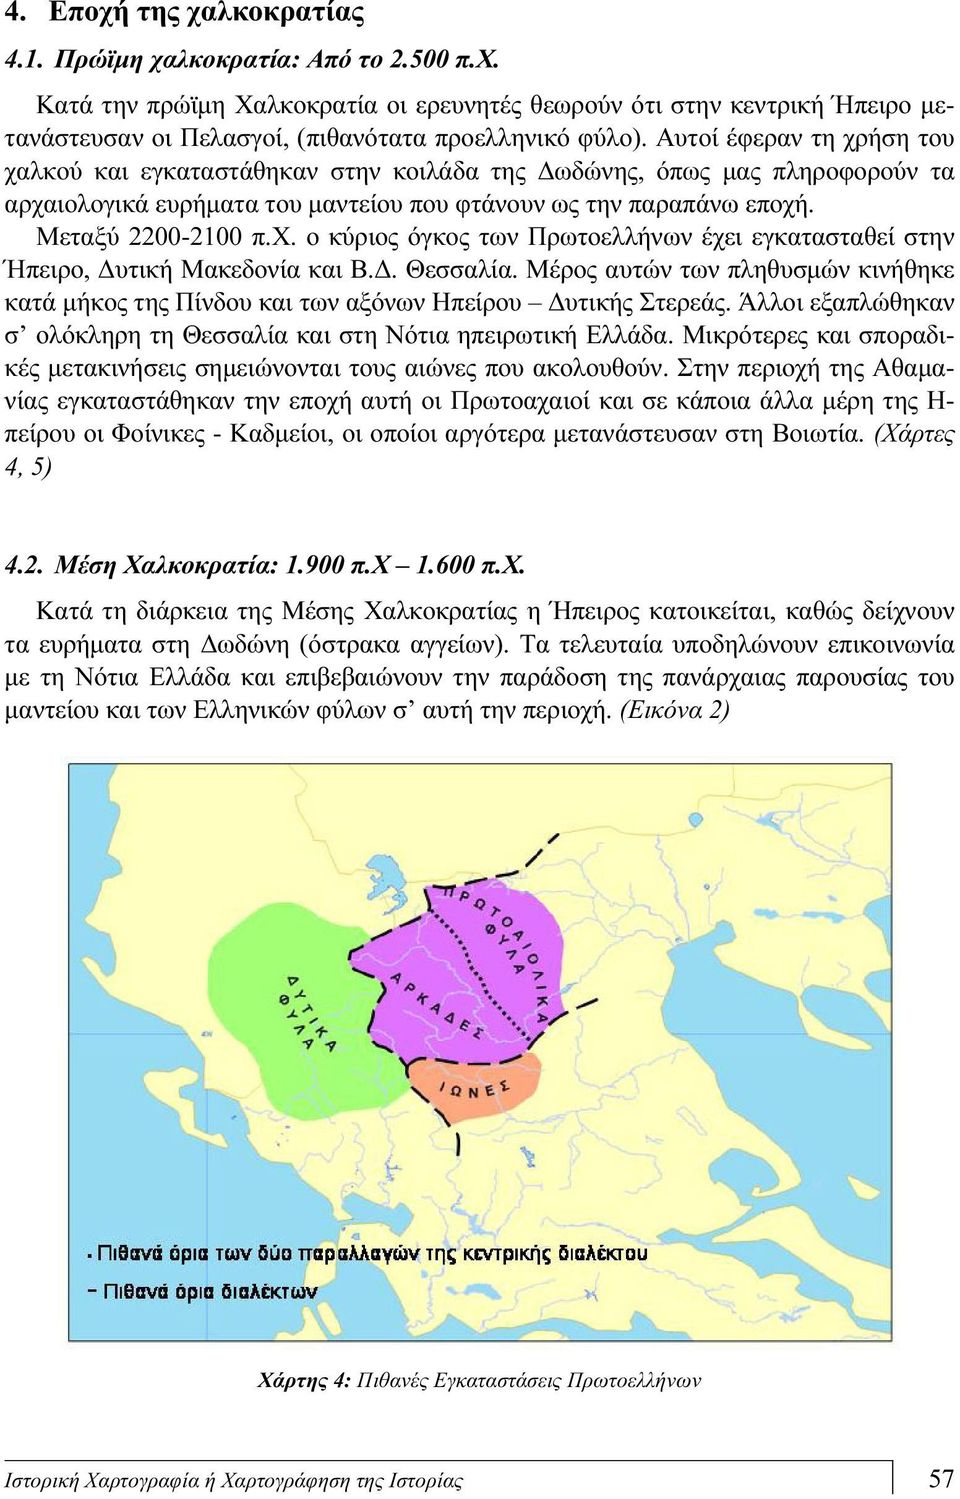 Δ. Θεσσαλία. Μέρος αυτών των πληθυσμών κινήθηκε κατά μήκος της Πίνδου και των αξόνων Ηπείρου Δυτικής Στερεάς. Άλλοι εξαπλώθηκαν σ ολόκληρη τη Θεσσαλία και στη Νότια ηπειρωτική Ελλάδα.